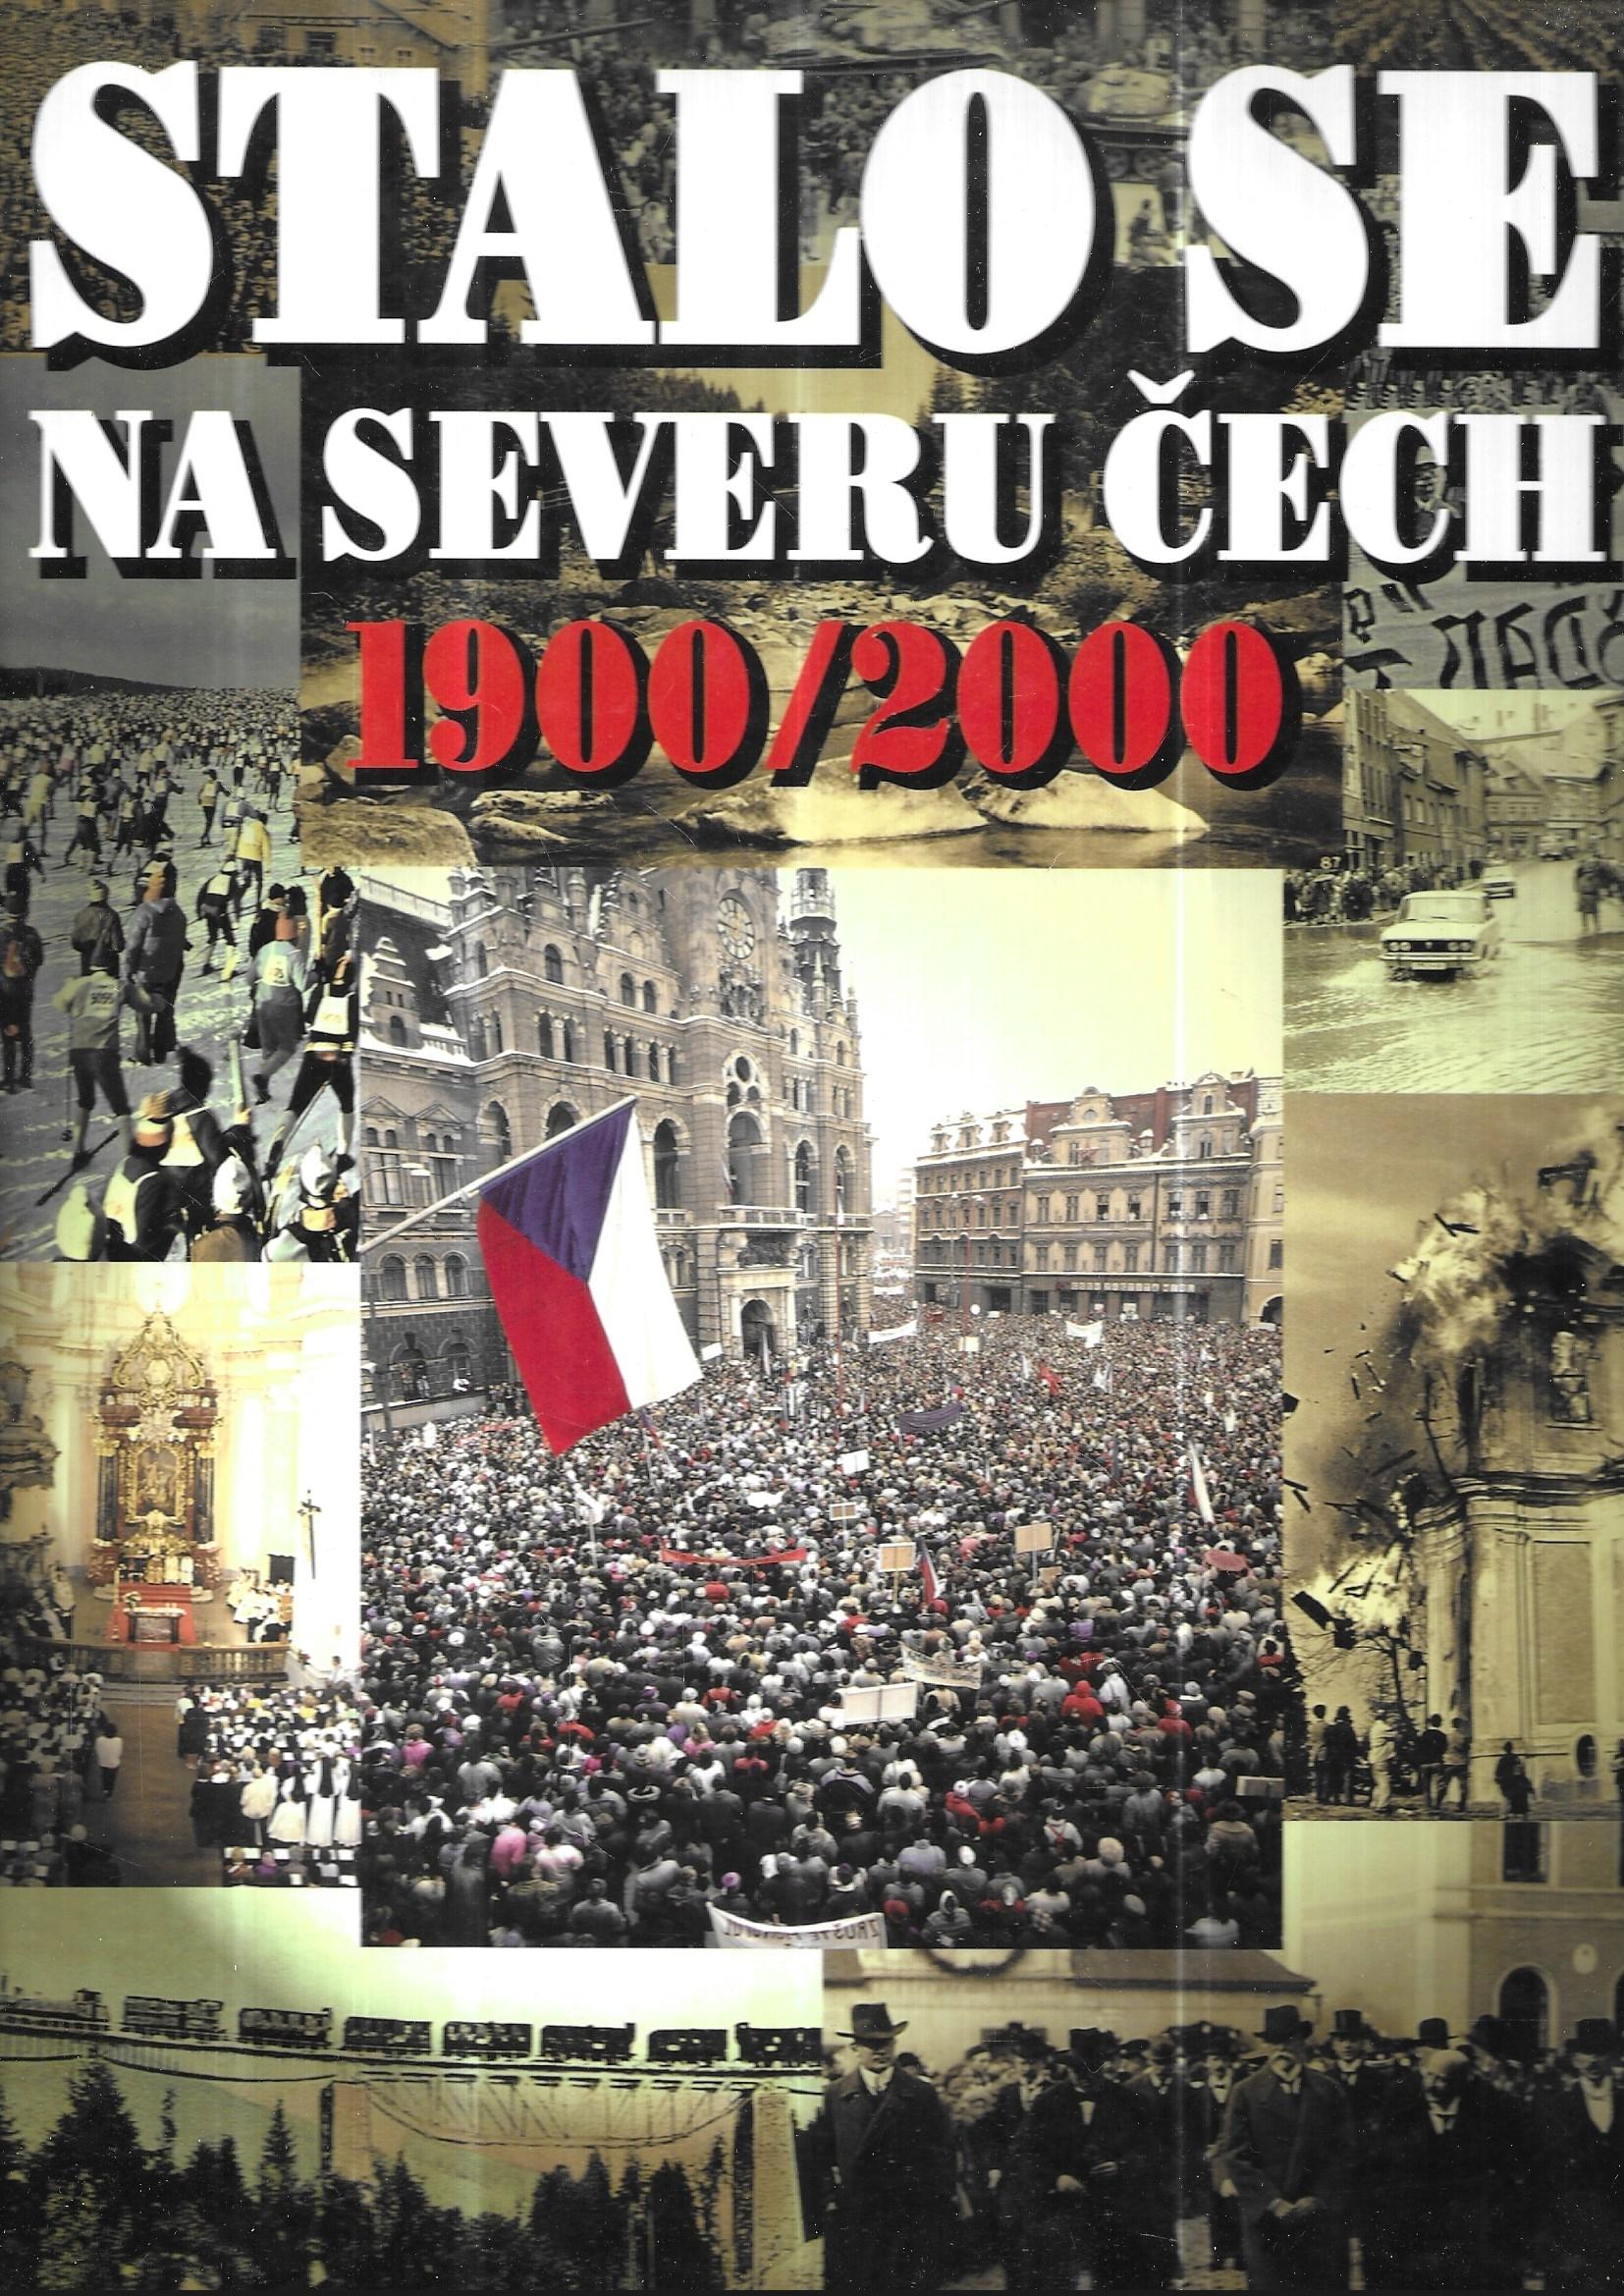 Stalo se na severu Čech 1900/2000